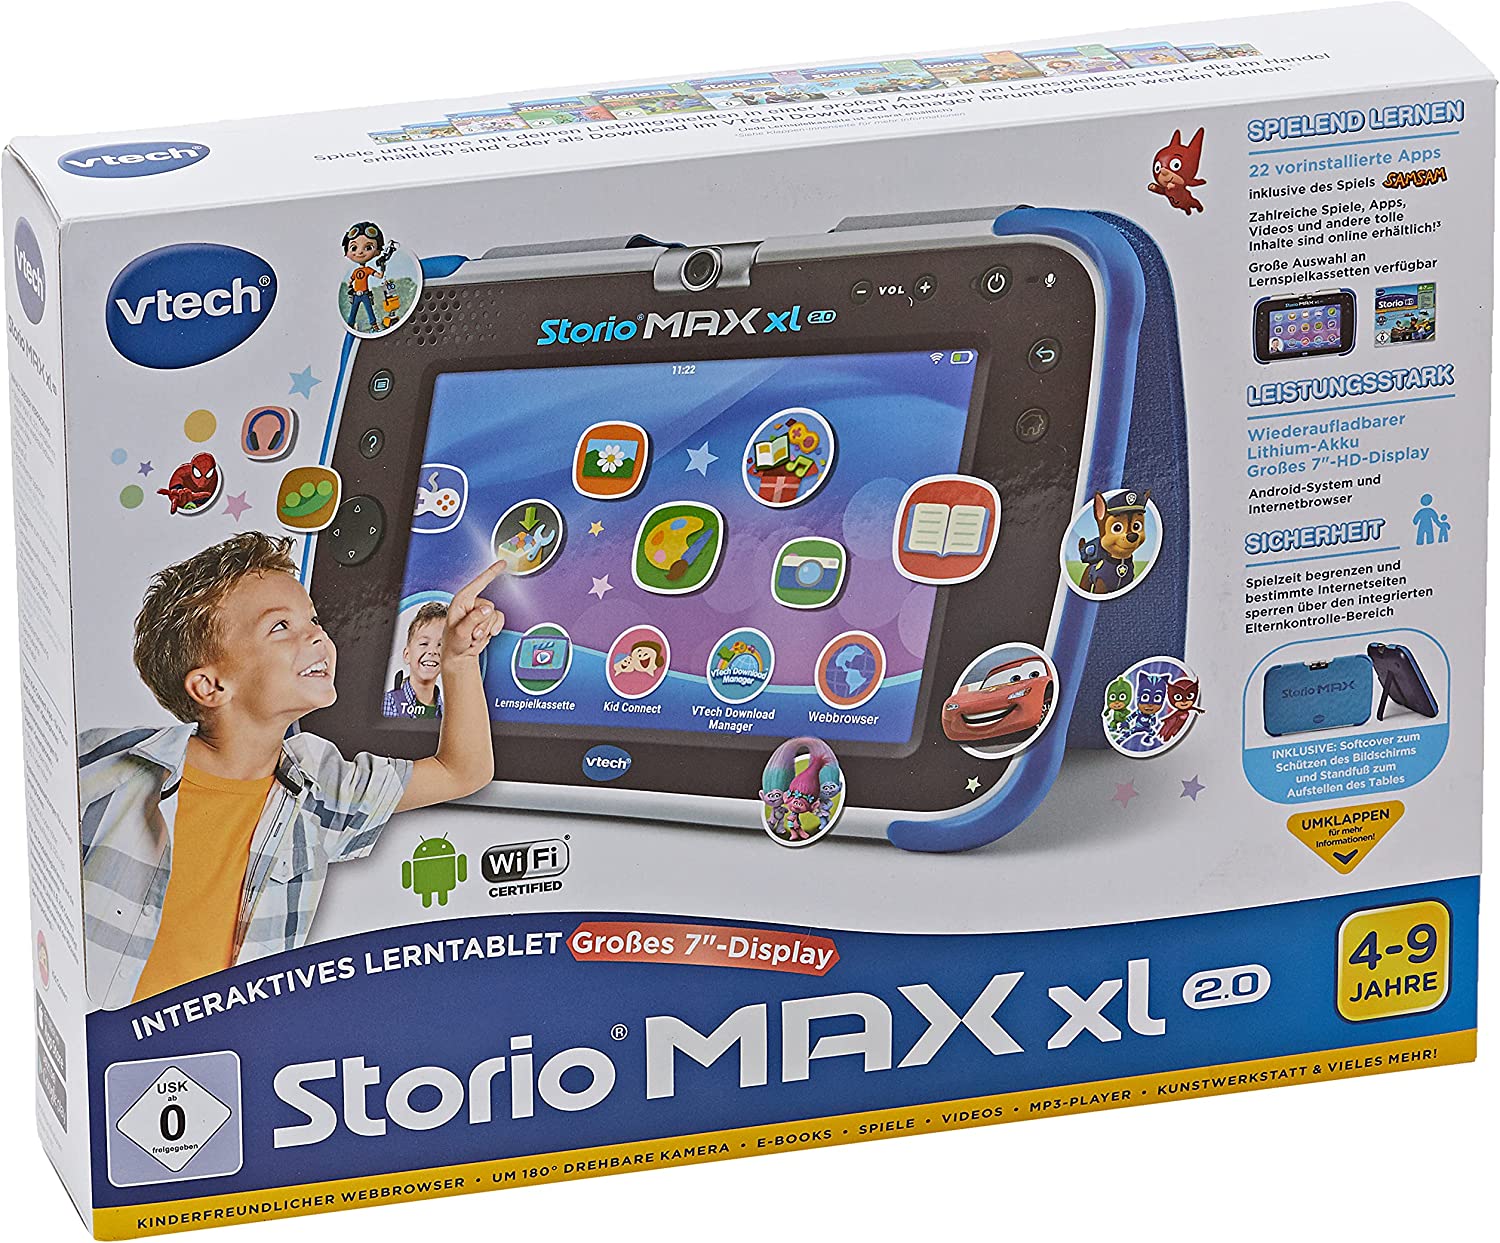 vtech Storio MAX 2.0 Interaktives Lern-Tablet